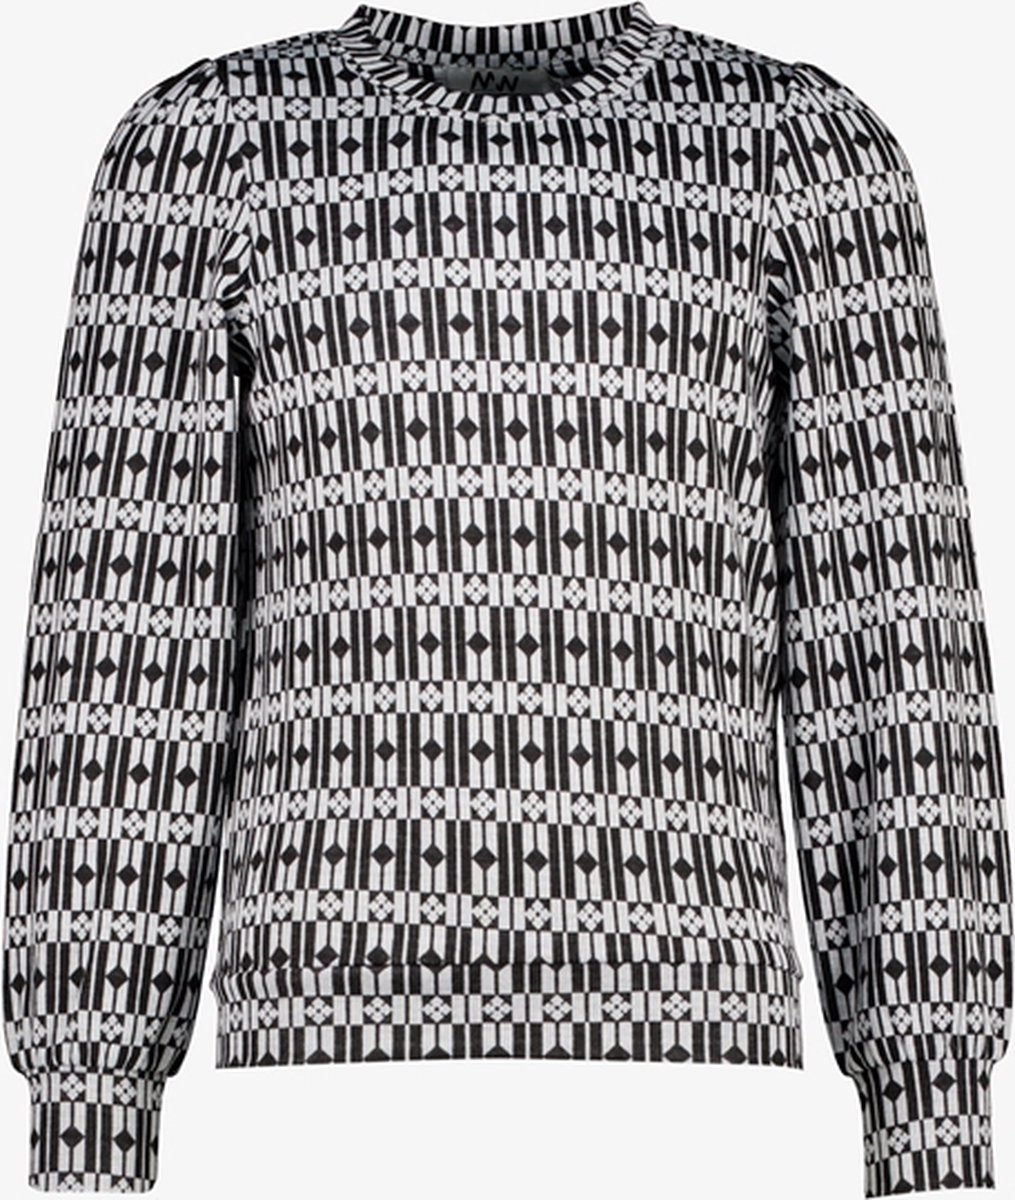 MyWay meisjes trui met print zwart/wit - Maat 146/152